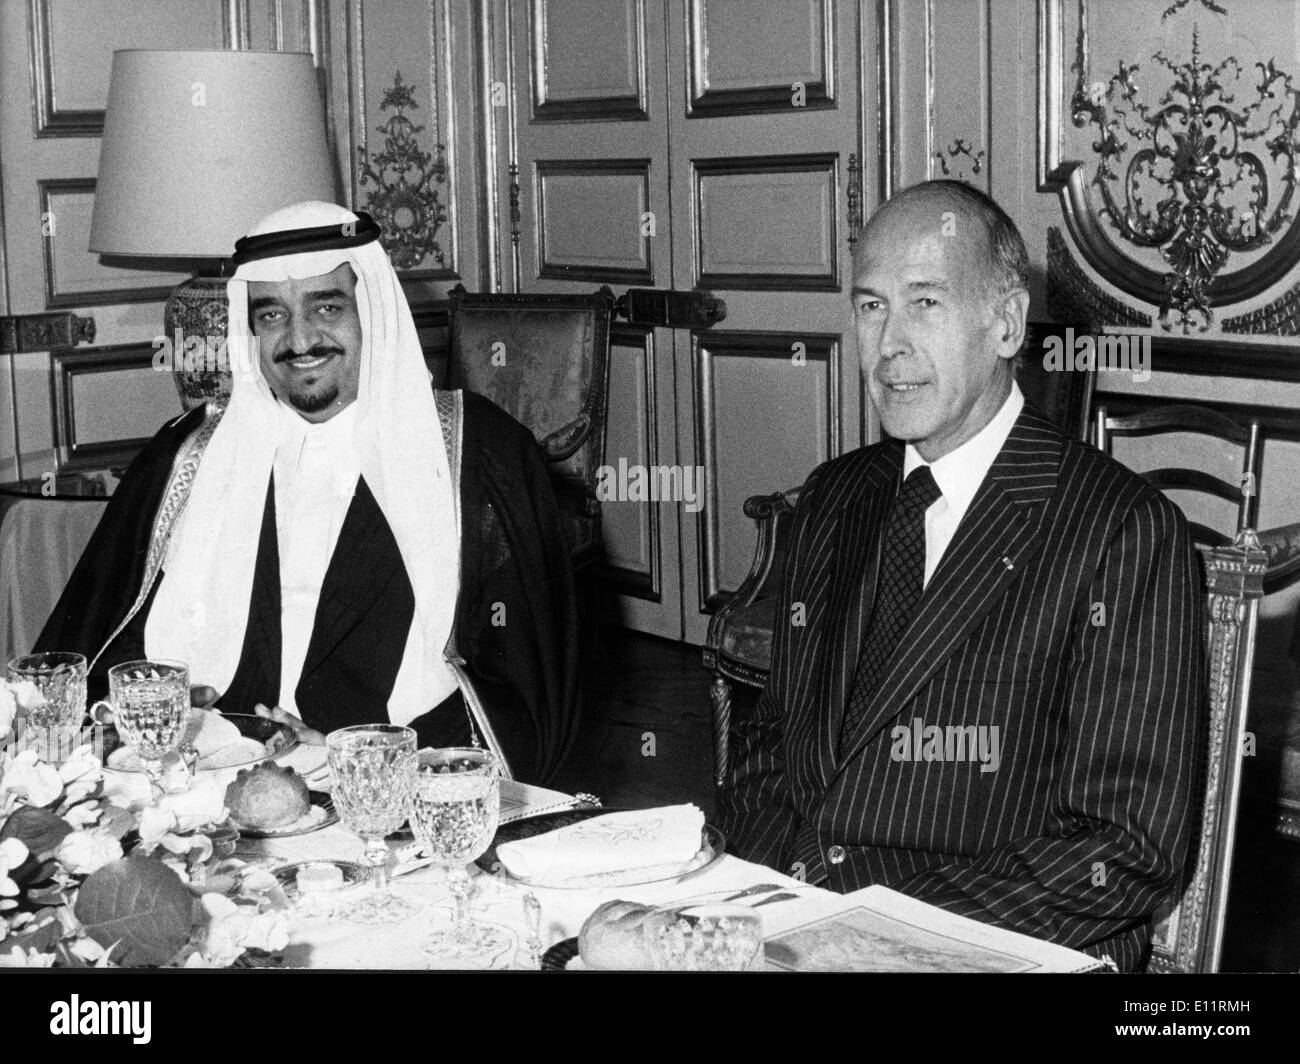 01 janvier 1980 - La ville de Koweït, Koweït - Photo : vers 1980. Le roi Abdullah bin Abdul Aziz Al Saud (L). Maison des Saoud est la famille royale du Royaume d'Arabie Saoudite. La nation moderne d'Arabie saoudite a été créé en 1932, si les racines et l'influence pour la Maison des Saoud a été plantée dans la péninsule arabe plusieurs siècles plus tôt. Avant l'ère du fondateur du royaume, Abdul-Aziz ibn Saud, la famille a jugé le Nejd et avait à plusieurs reprises en conflit avec l'Empire Ottoman, le Chérif de La Mecque, et la famille Al Rashid de Ha'il Banque D'Images